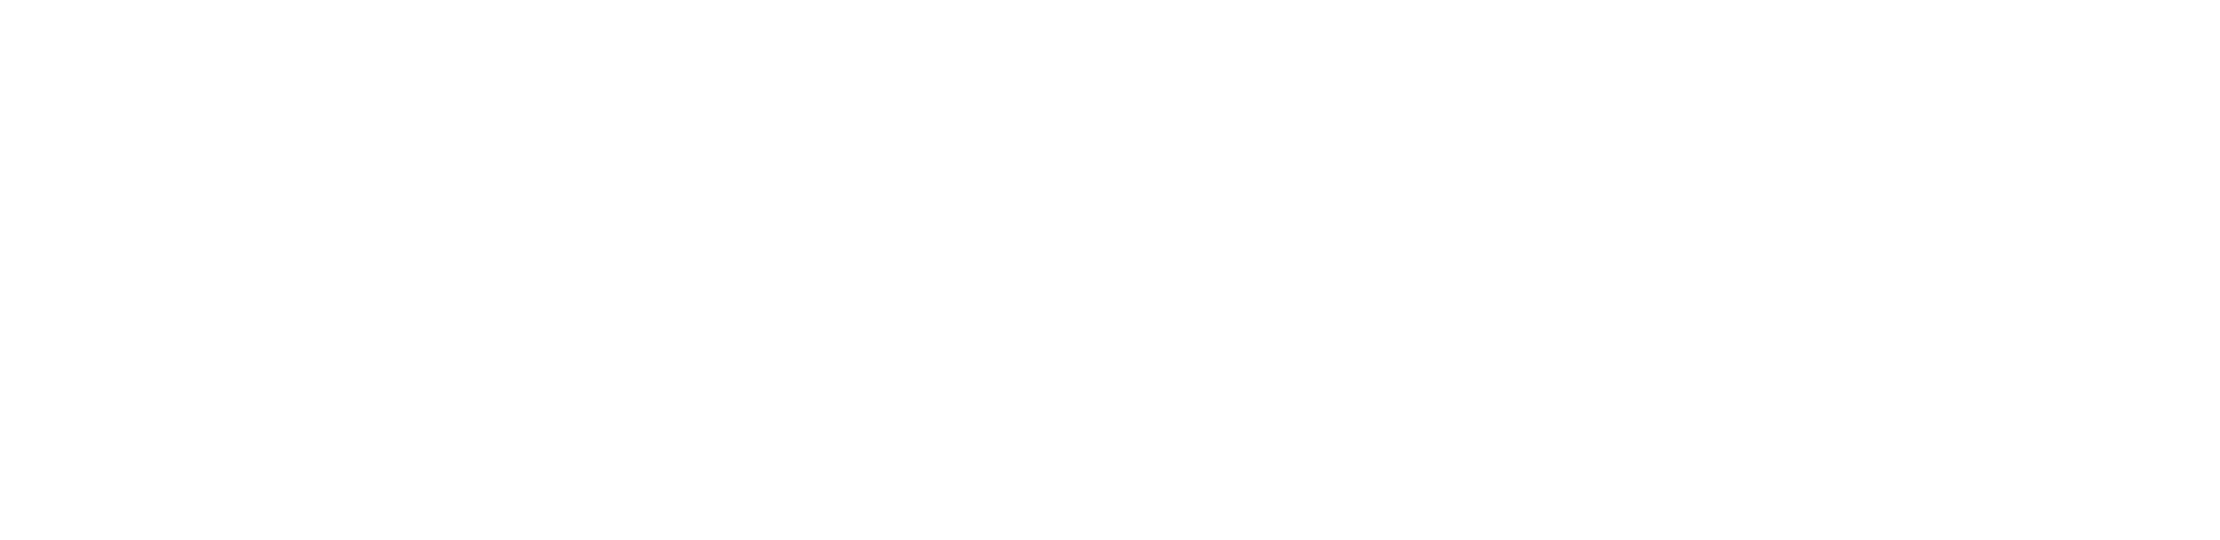 Meth-web-long-2220x540-severn-arts-logo-ideas-w